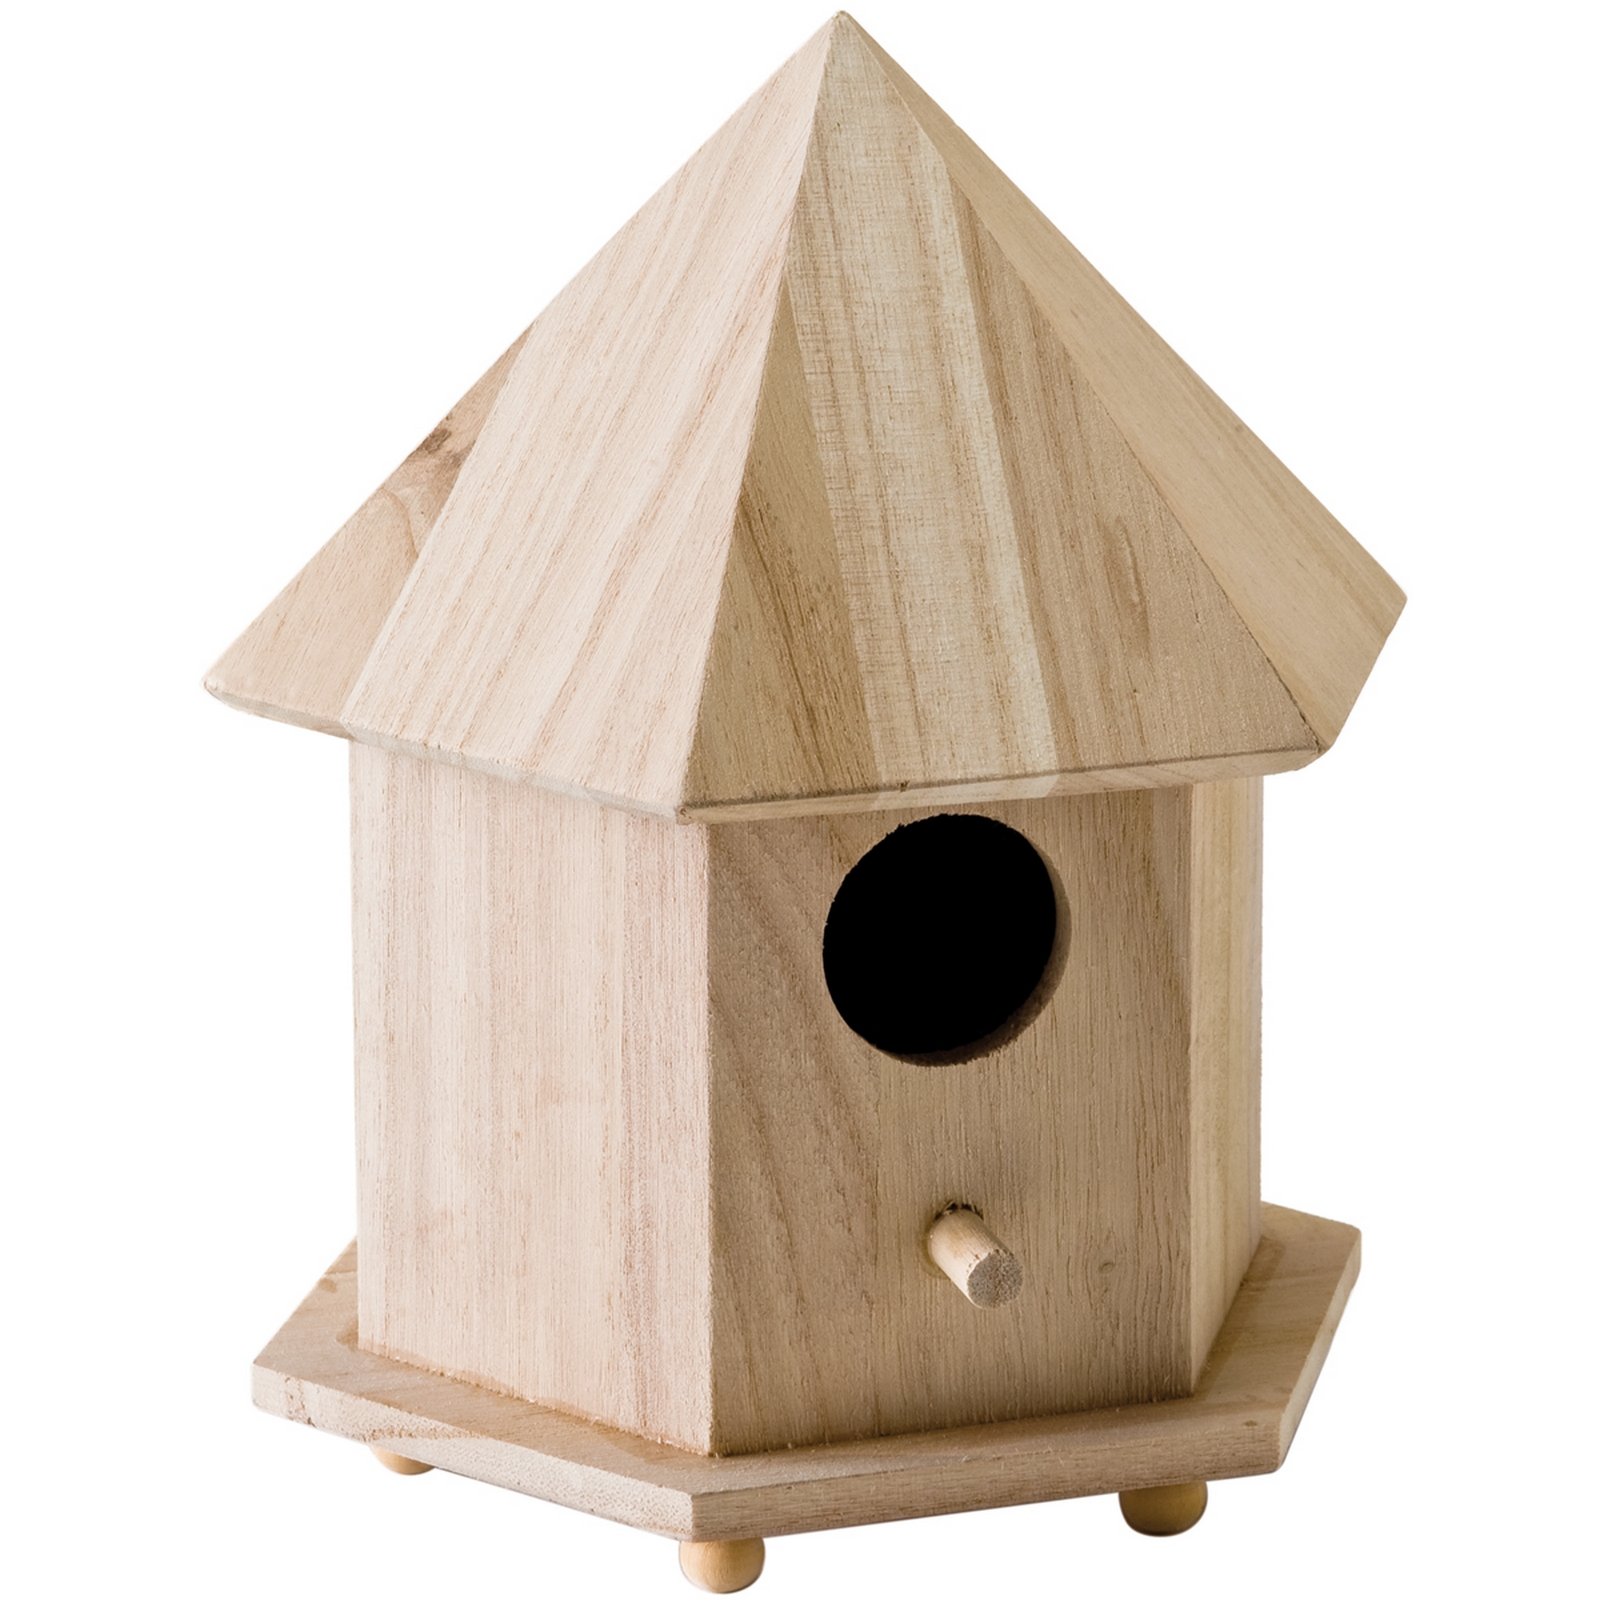 Wood Gazebo Birdhouse 6 3/4"X9"X5 3/4"